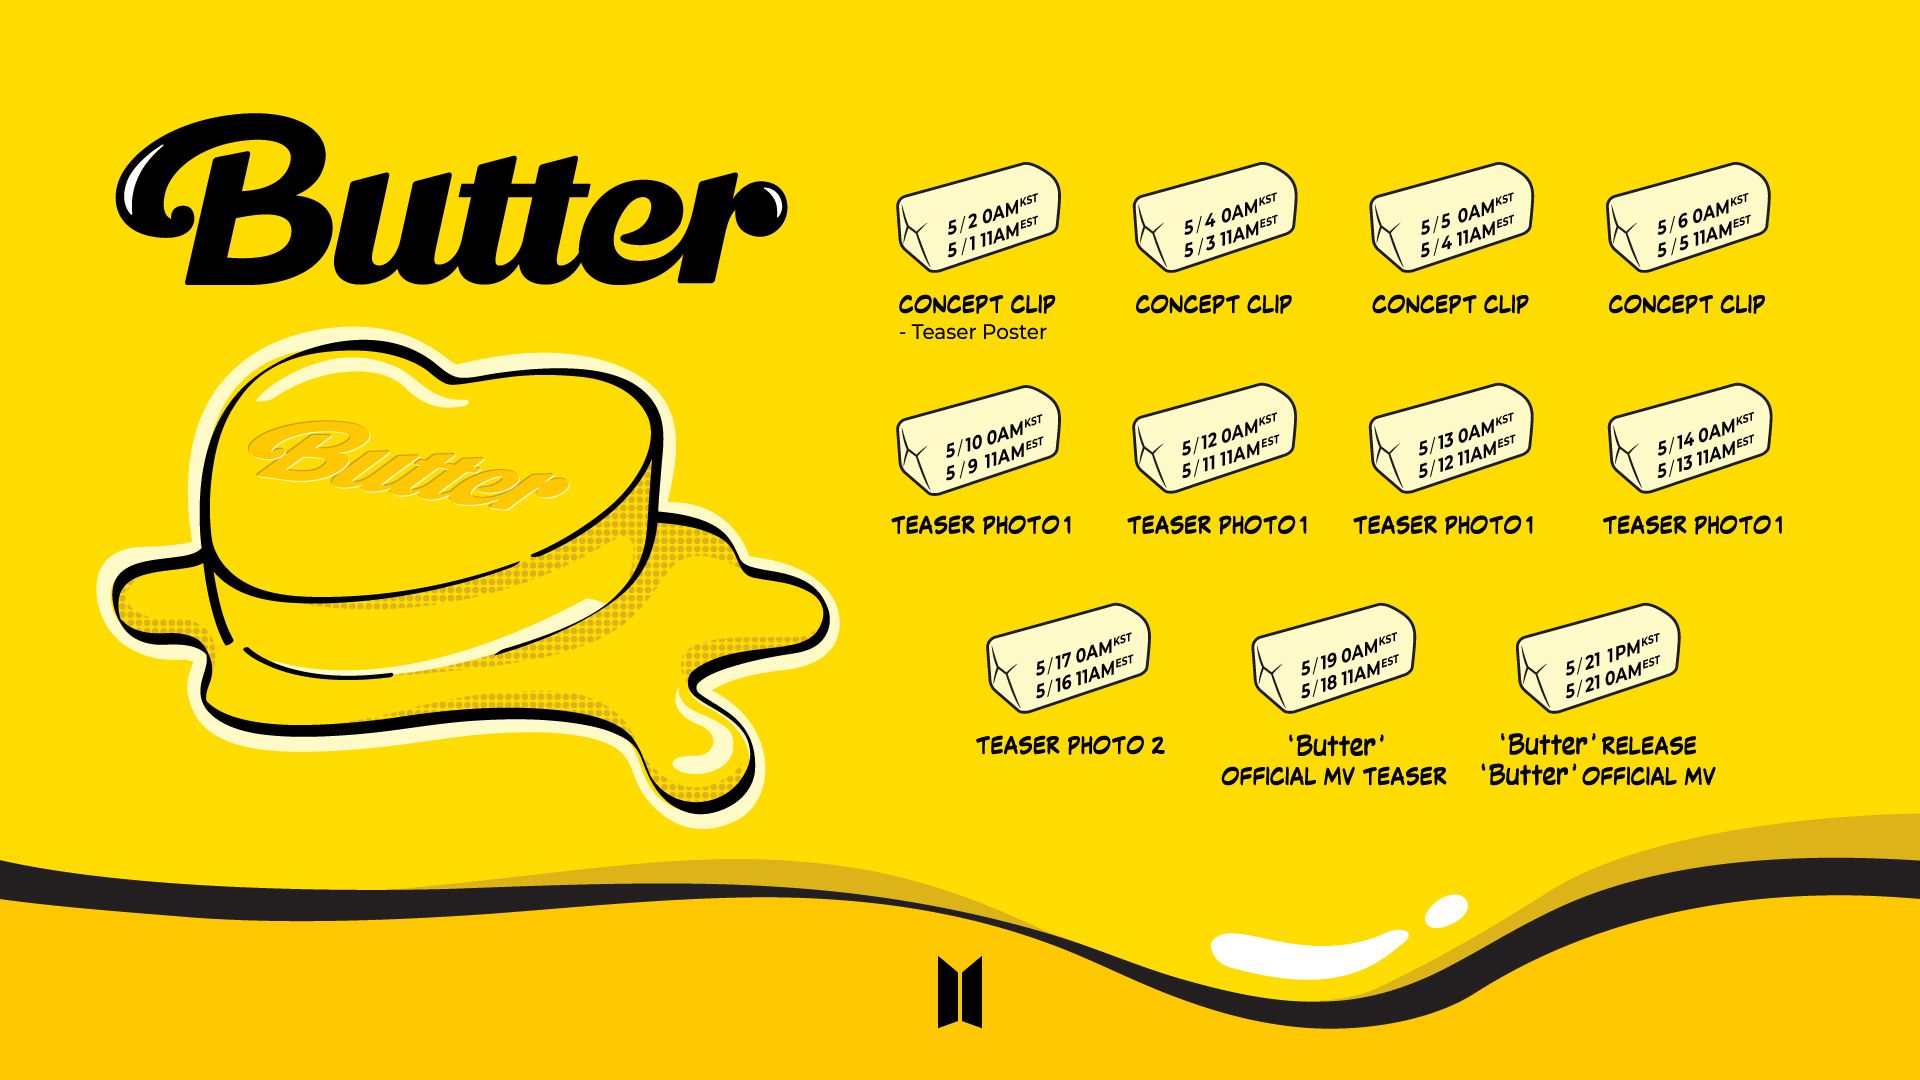 Butter bts wallpaper